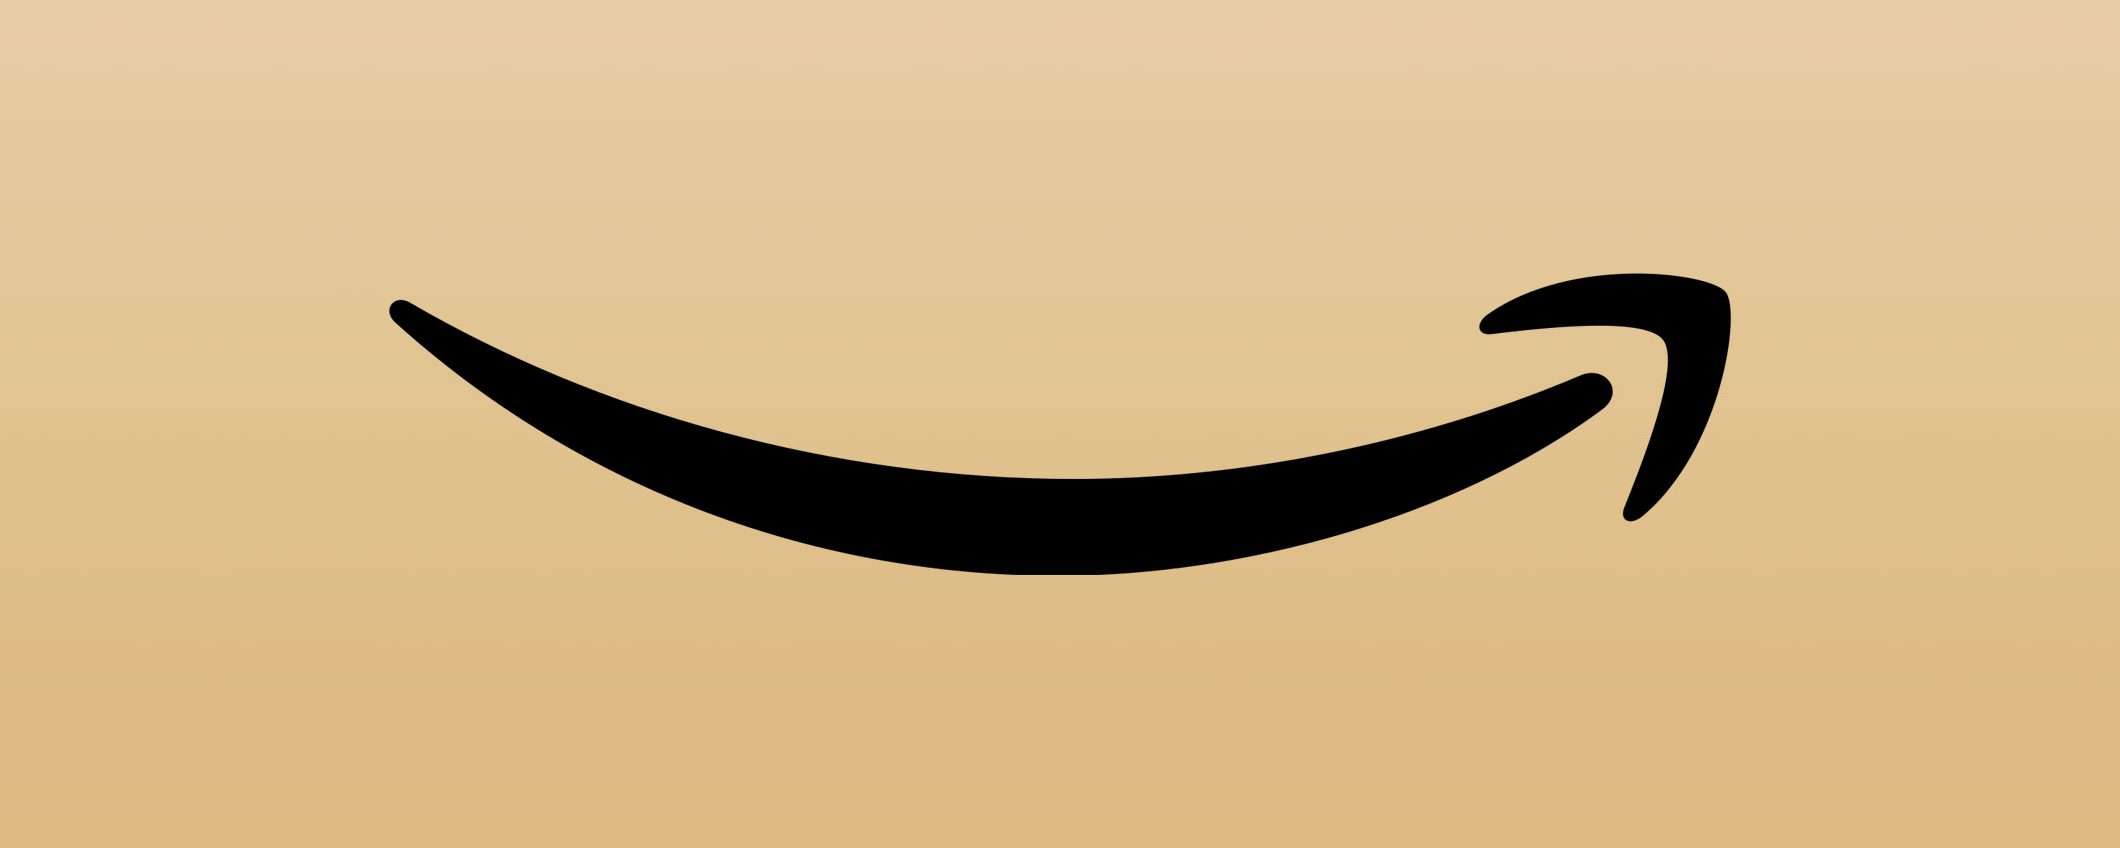 Amazon Prime costerà di più: l'aumento dei prezzi (non in Italia)